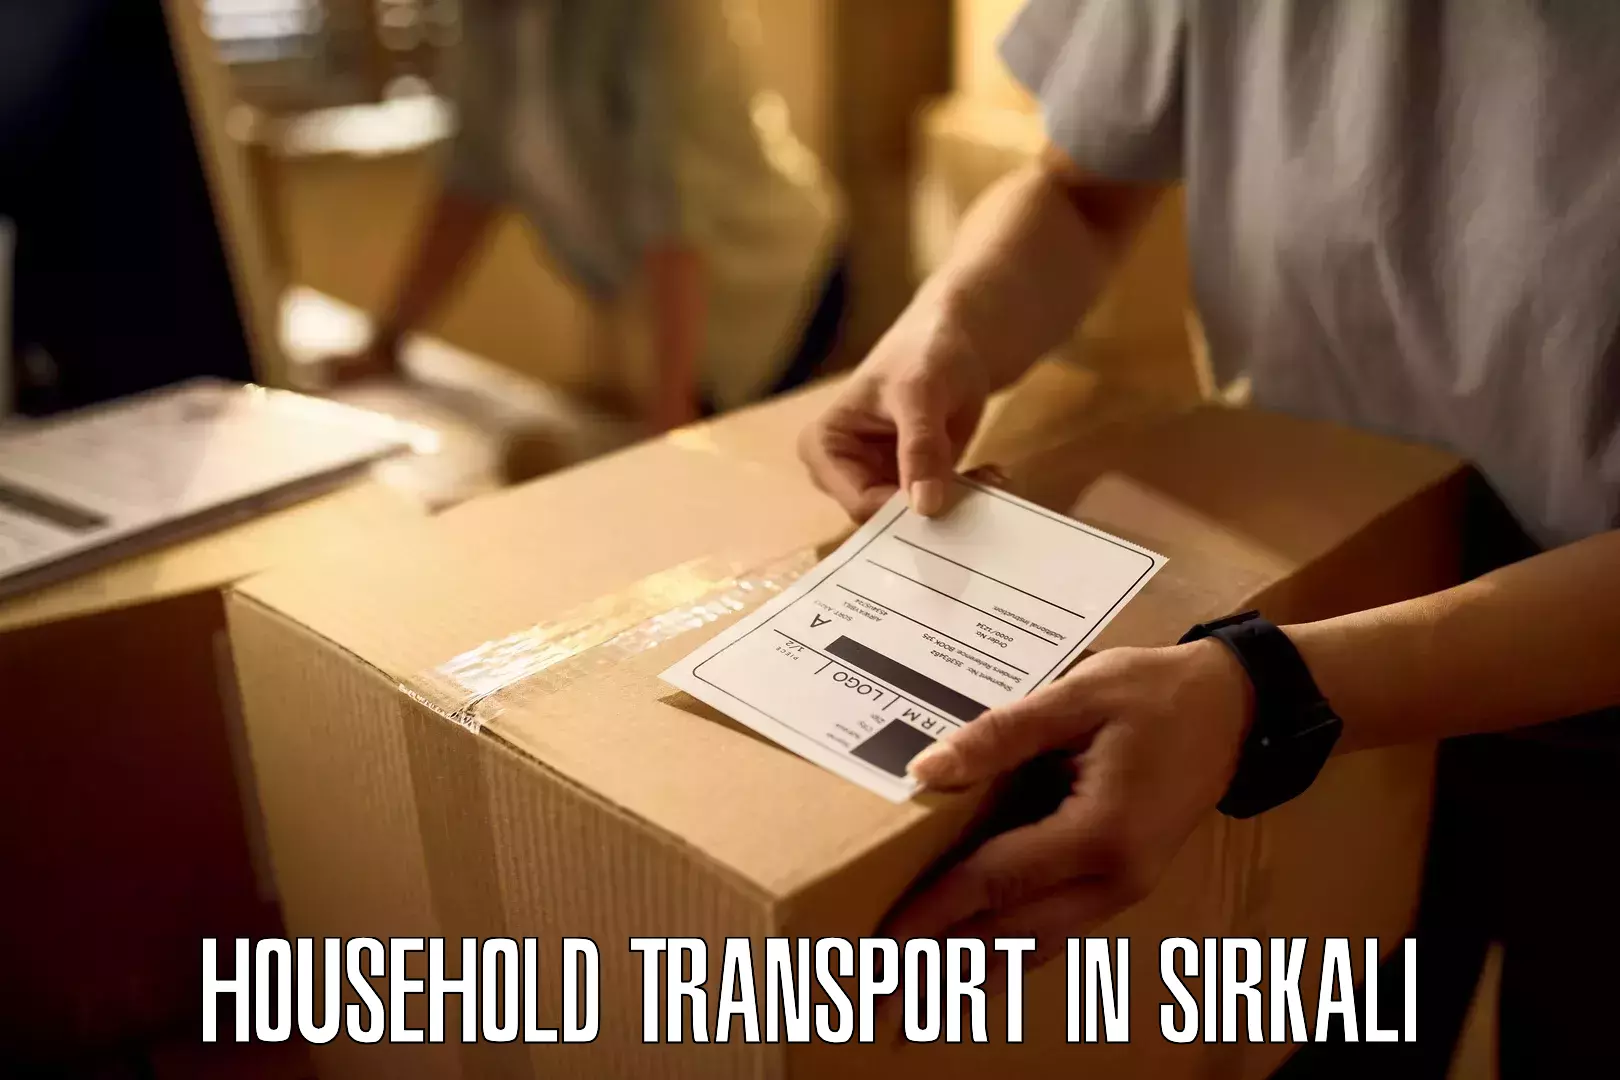 Furniture transport experts in Sirkali